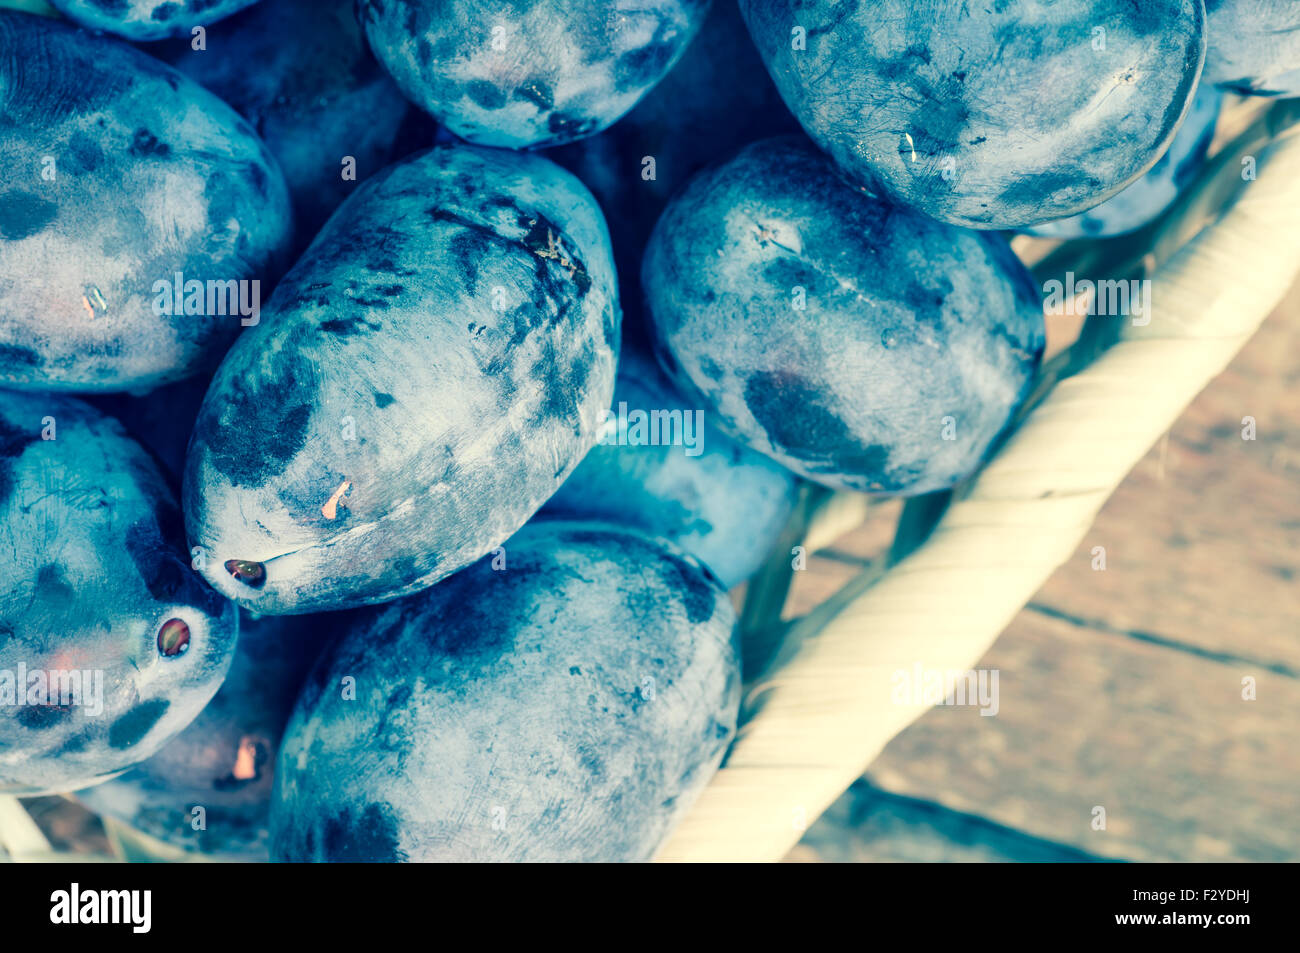 Les prunes bleu frais dans un panier en osier vue supérieure Banque D'Images